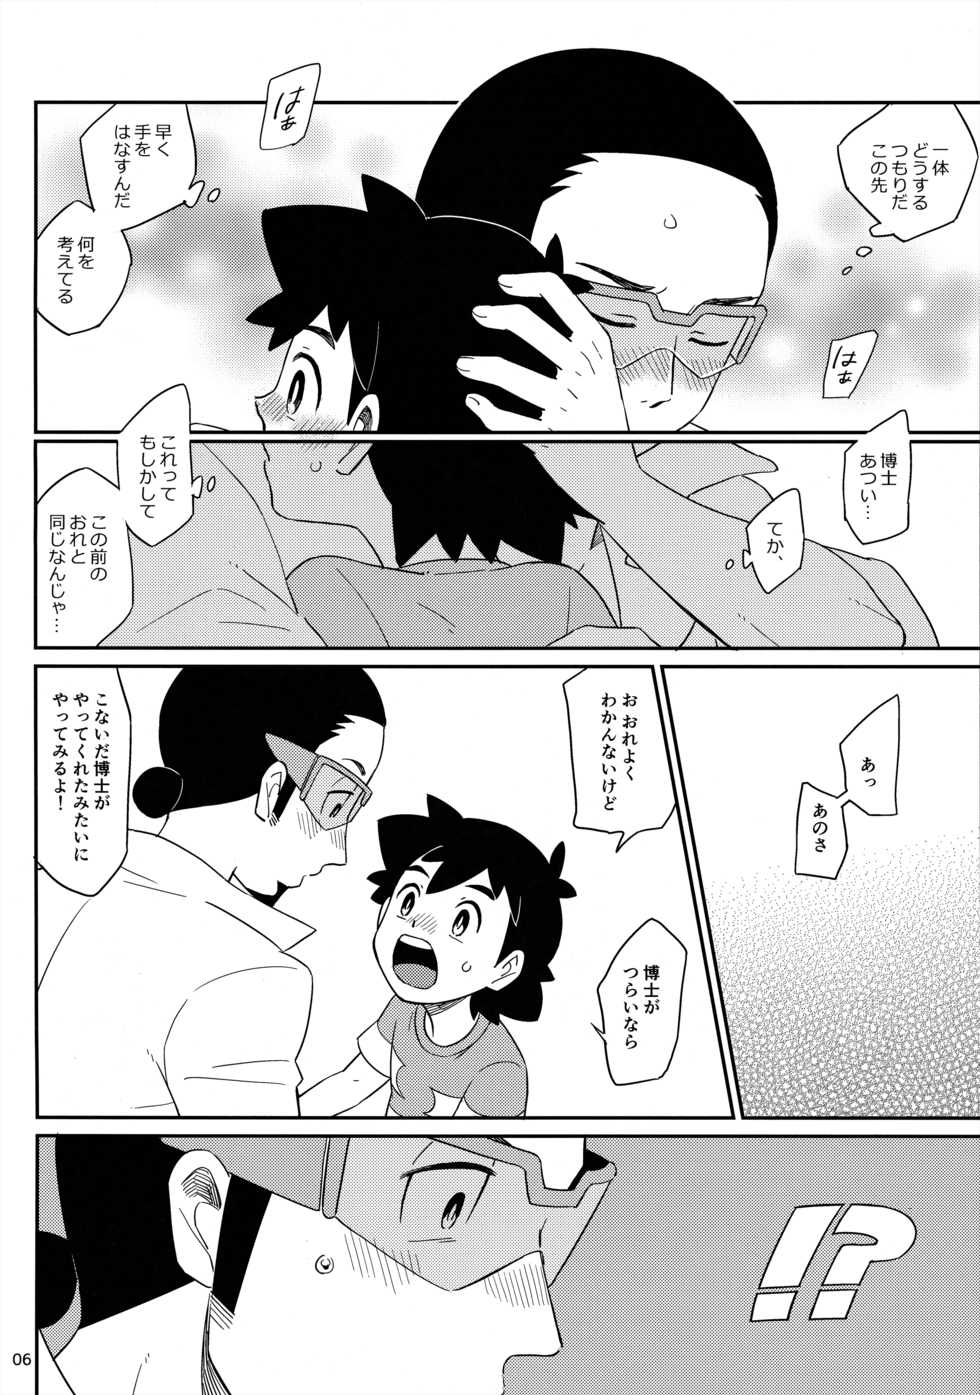 [YMC (Chihi)] Okaerinasai no Sono Ato wa (Pokémon) [2017-06-18] - Page 6